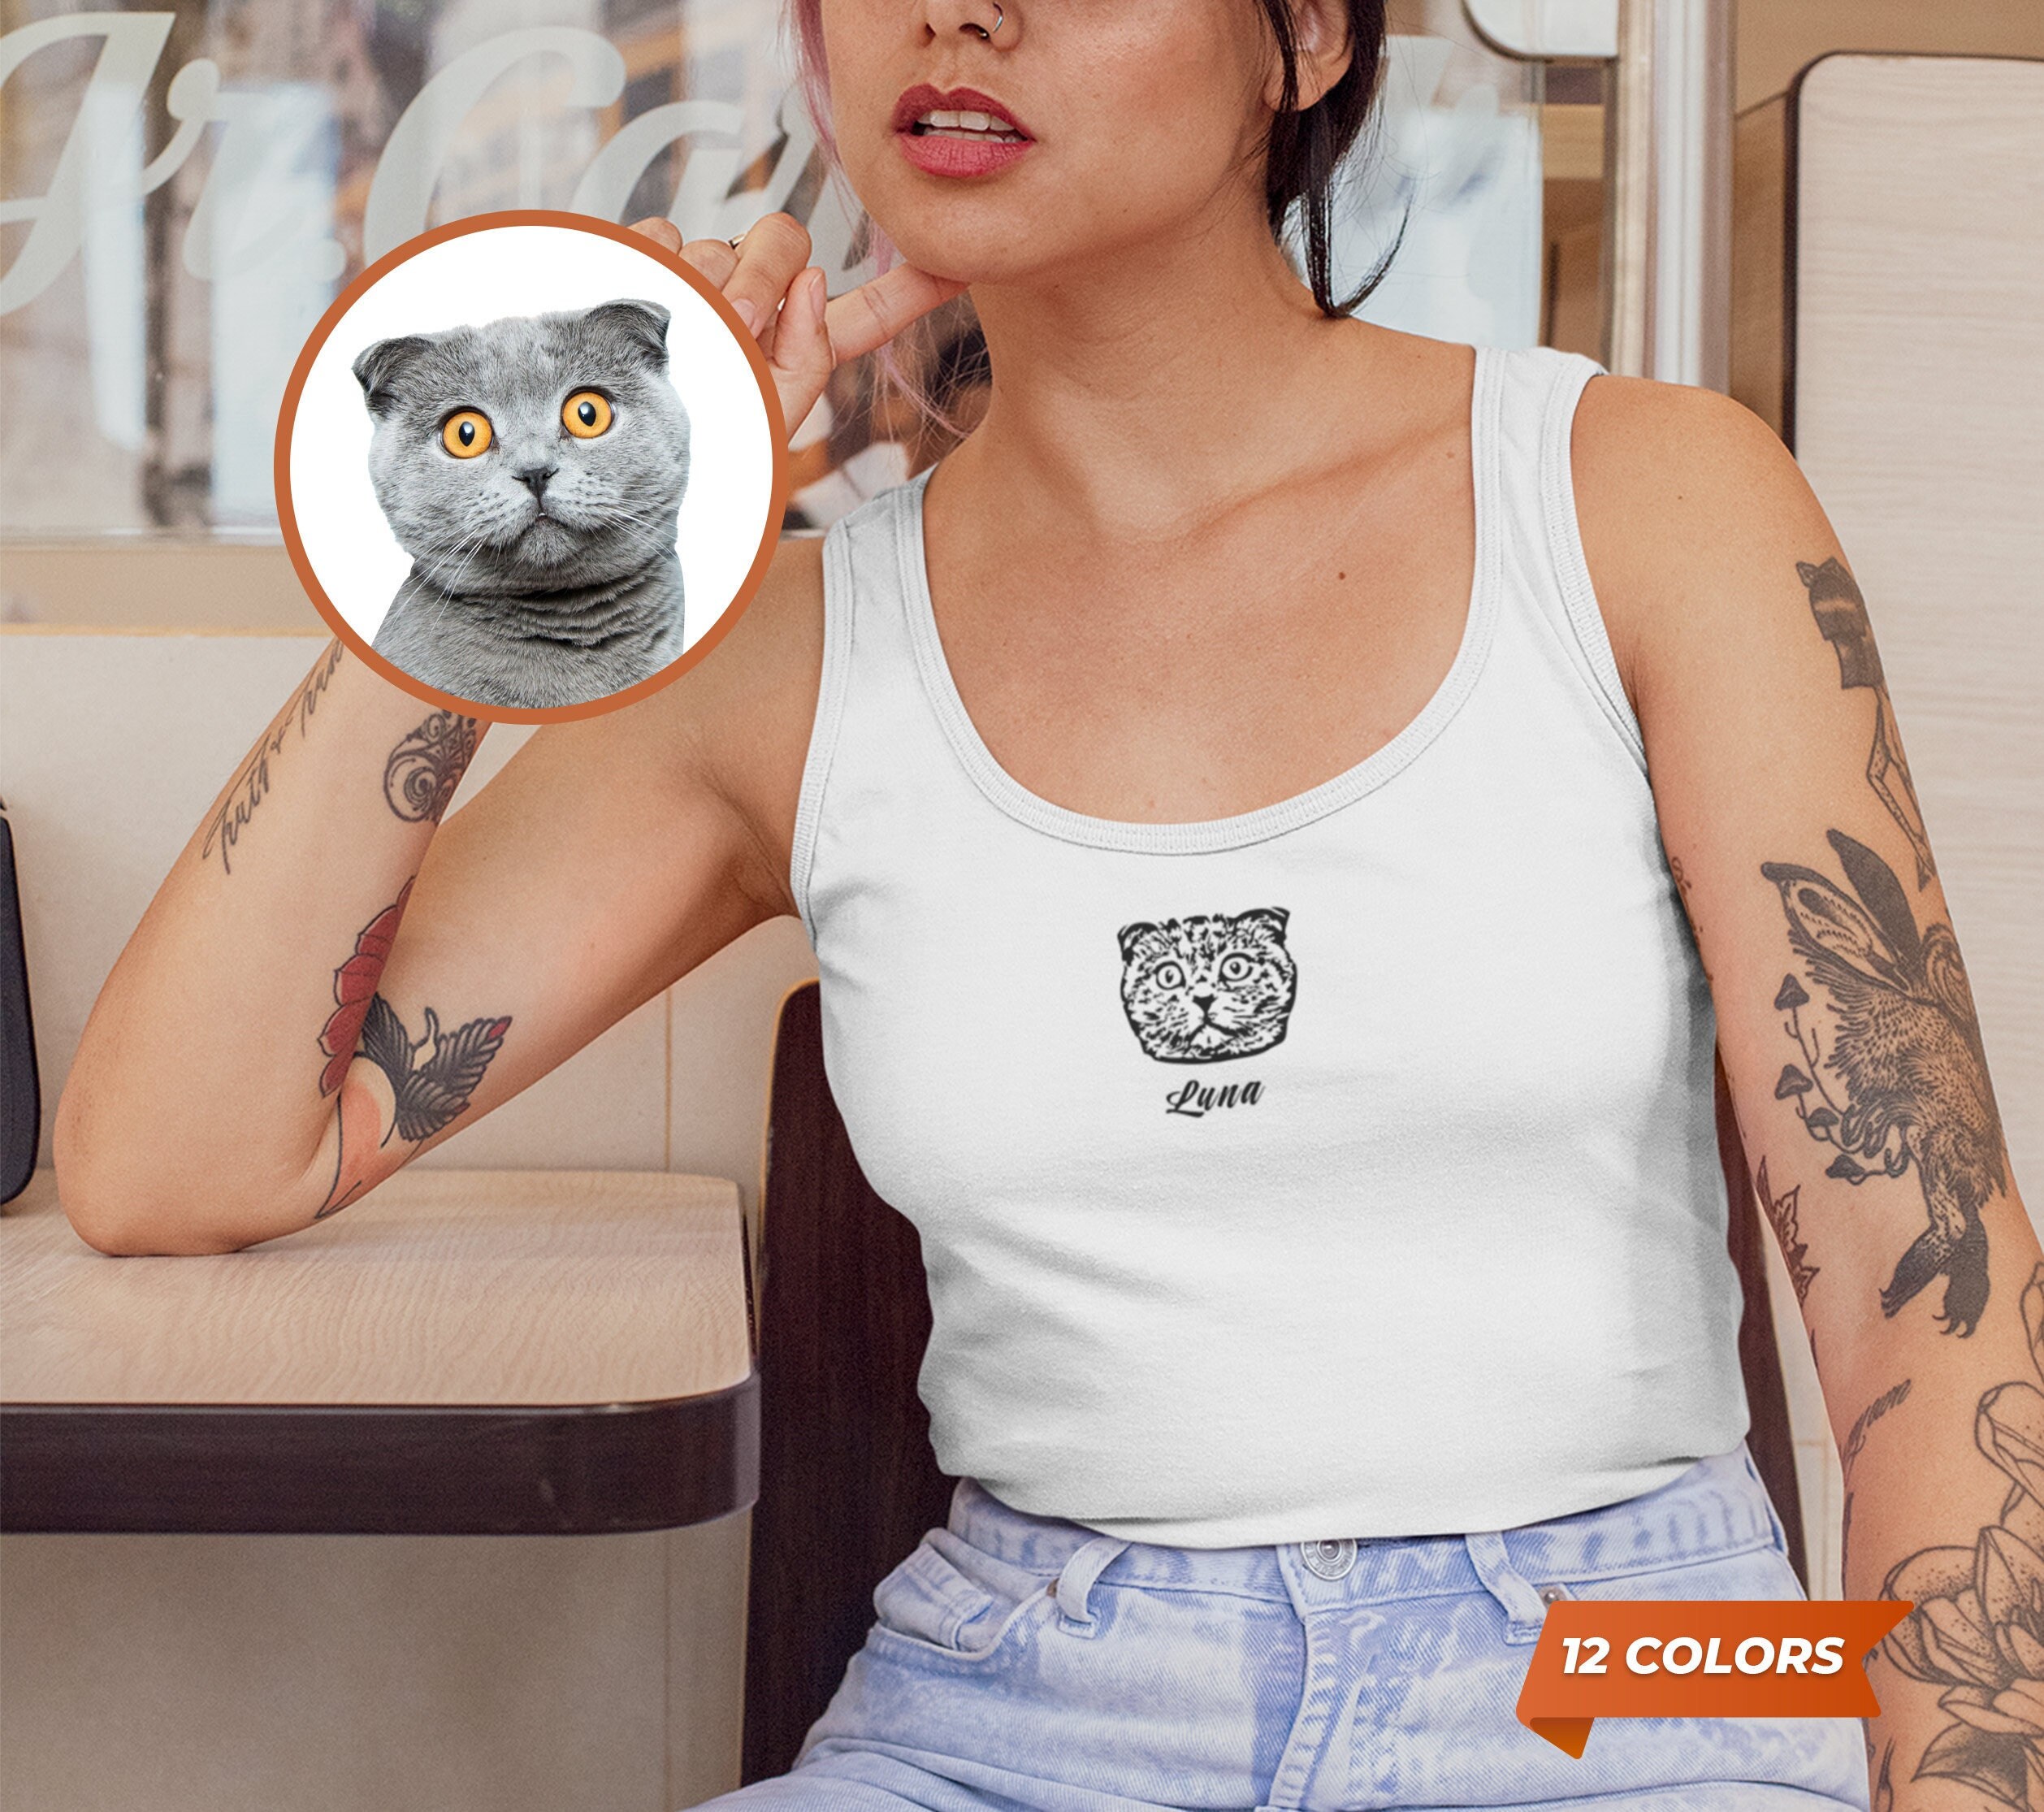 Camiseta com foto de animal de estimação